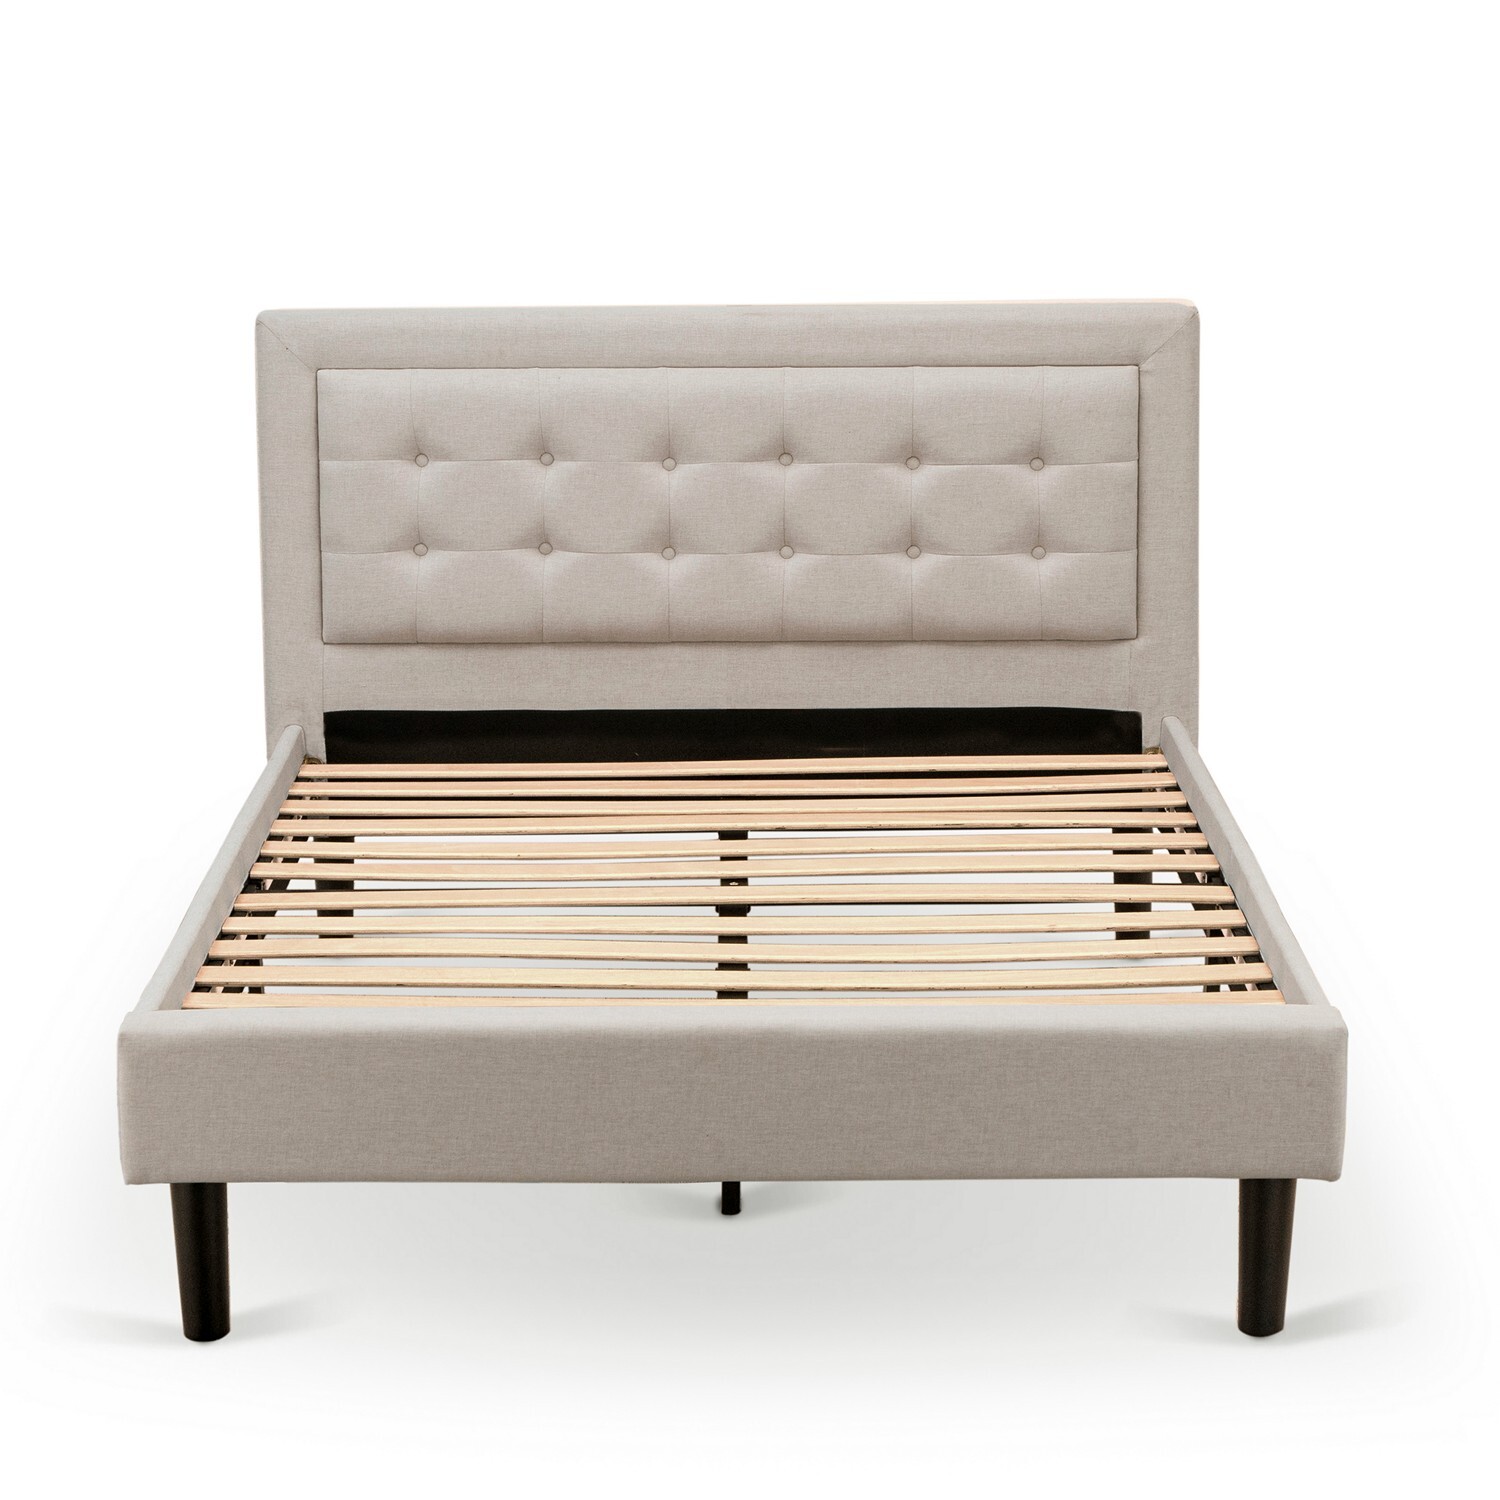 East West Furniture 2-piece Wood Platform Bedroom Set in Mist Beige/Burgundy - image 3 of 5